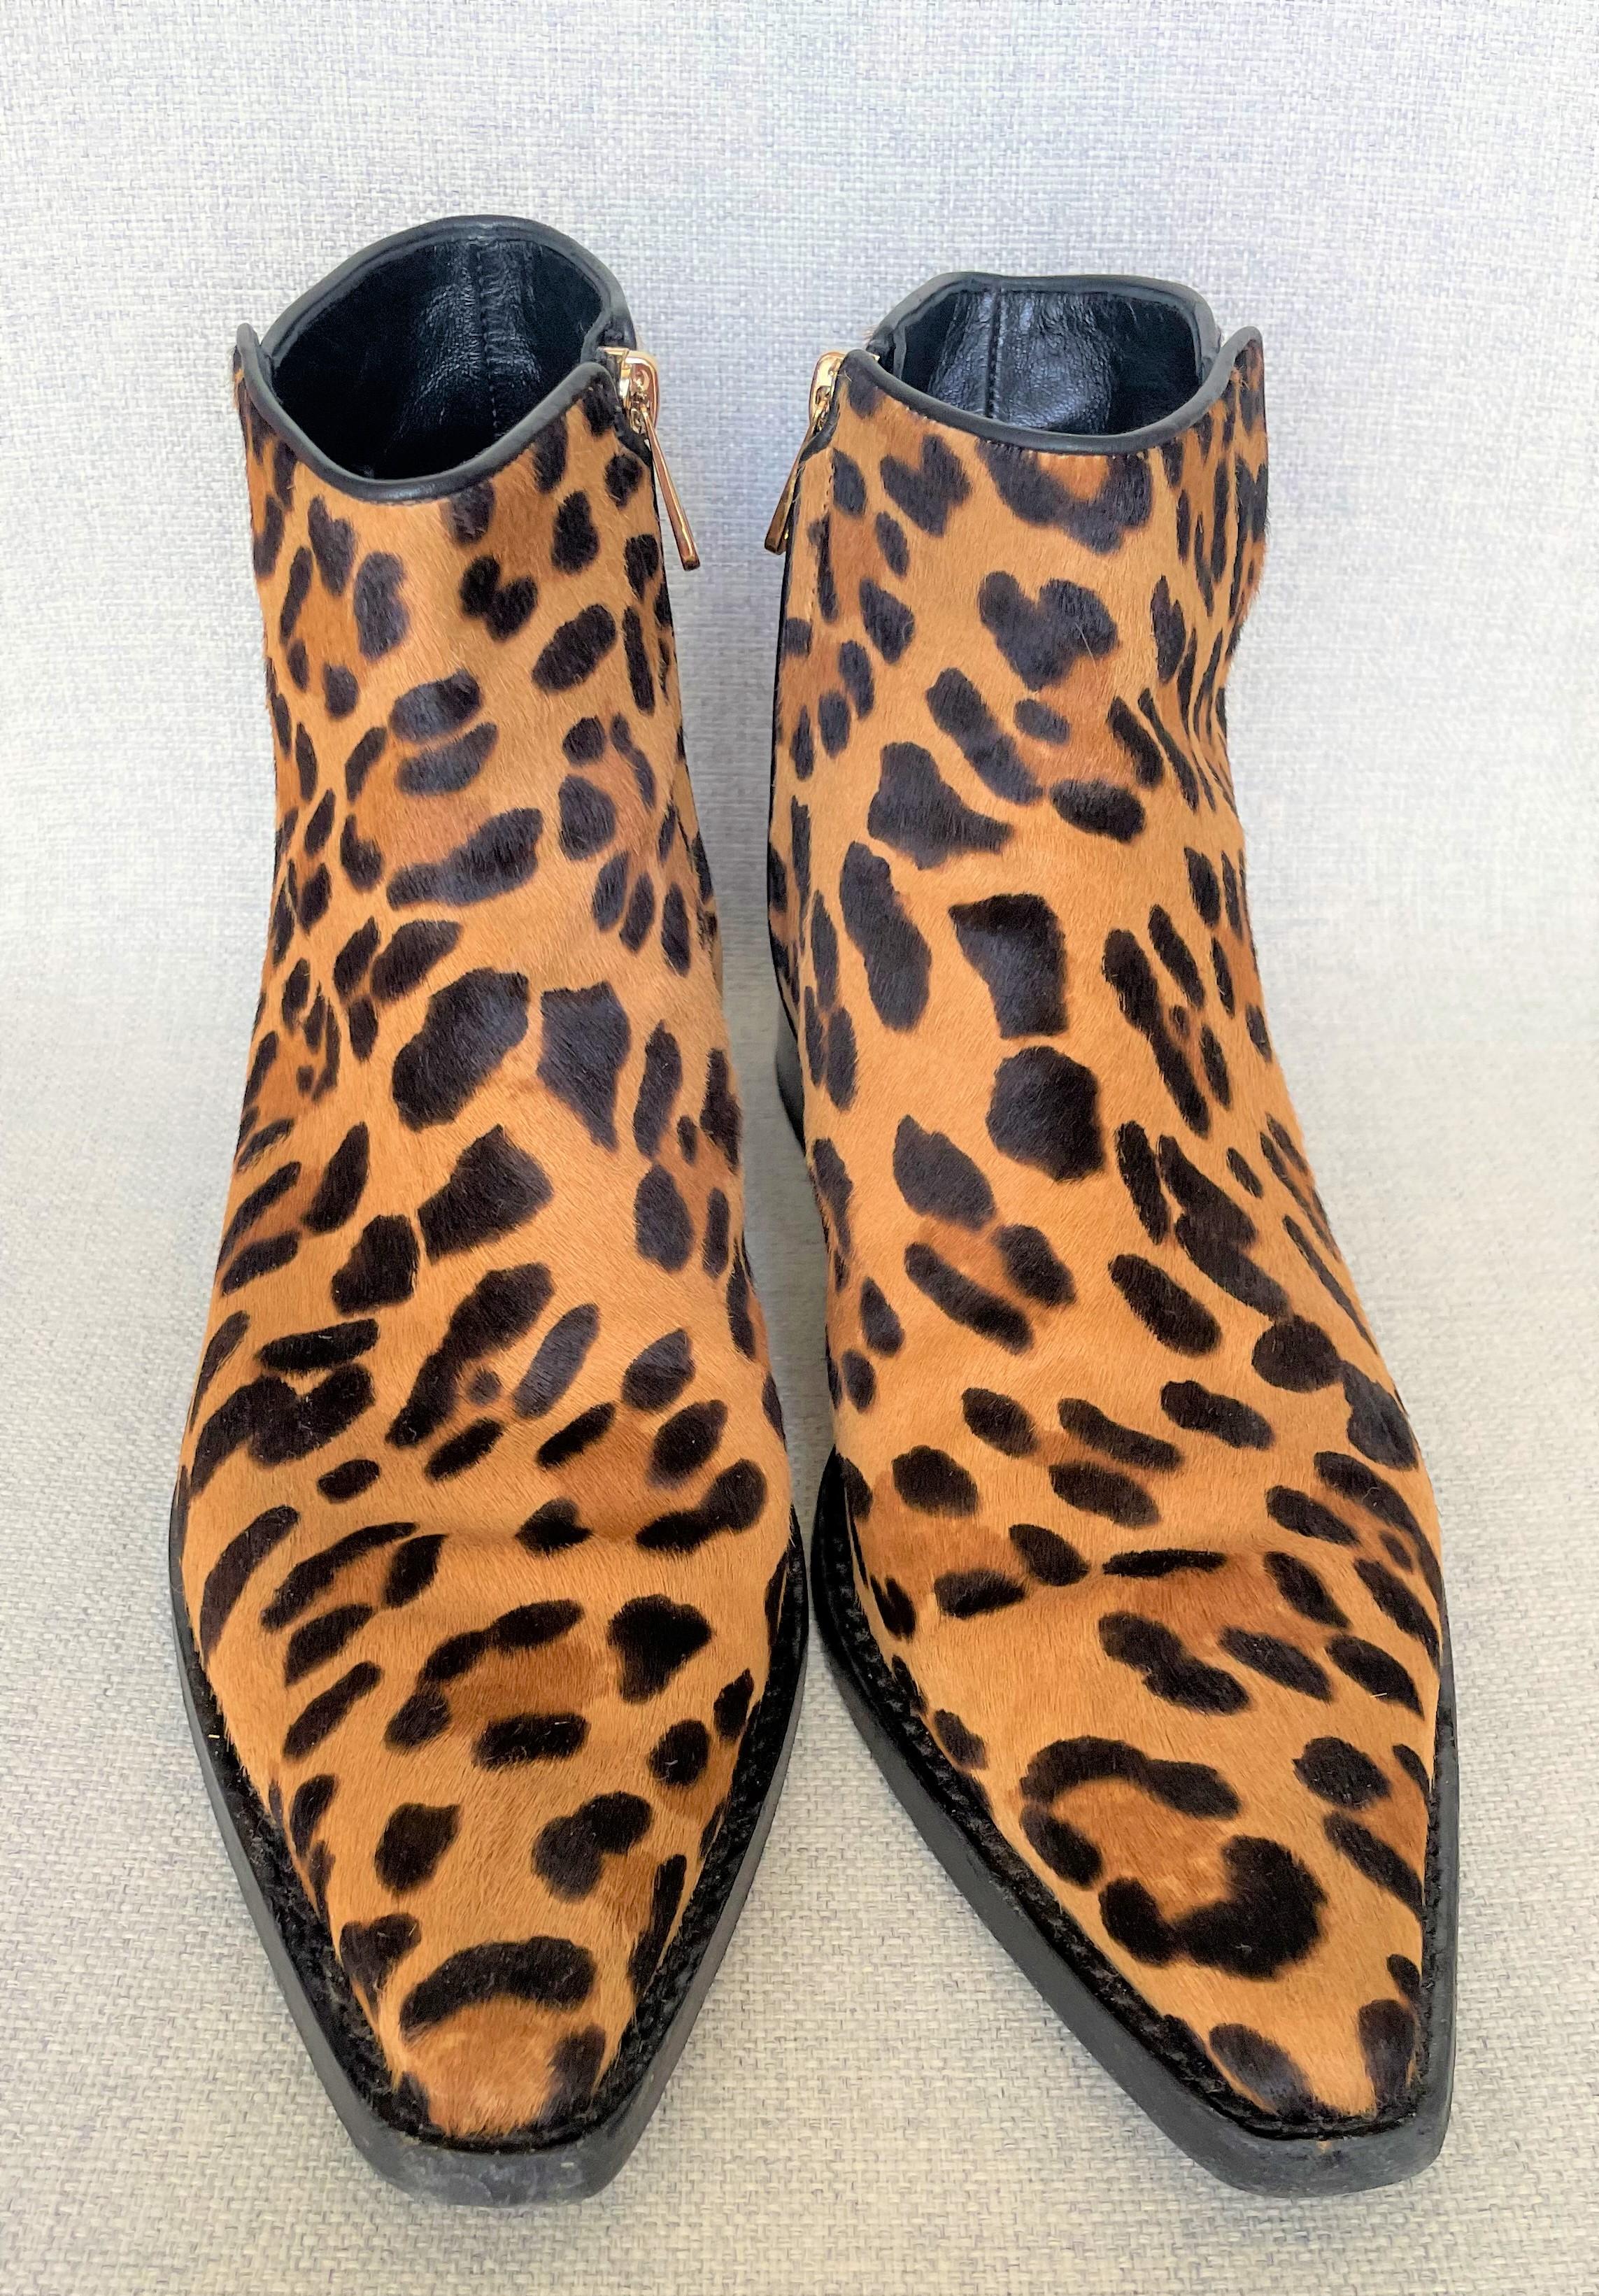 Magnifique et très rare 100% authentique D&G Leopard Ankle Boots taille 41 en 91% ponyskin.
Semelle en cuir. Un bout pointu. Fermeture à glissière latérale avec logo en métal doré. 

Design/One : Ces bottines se caractérisent par leur imprimé